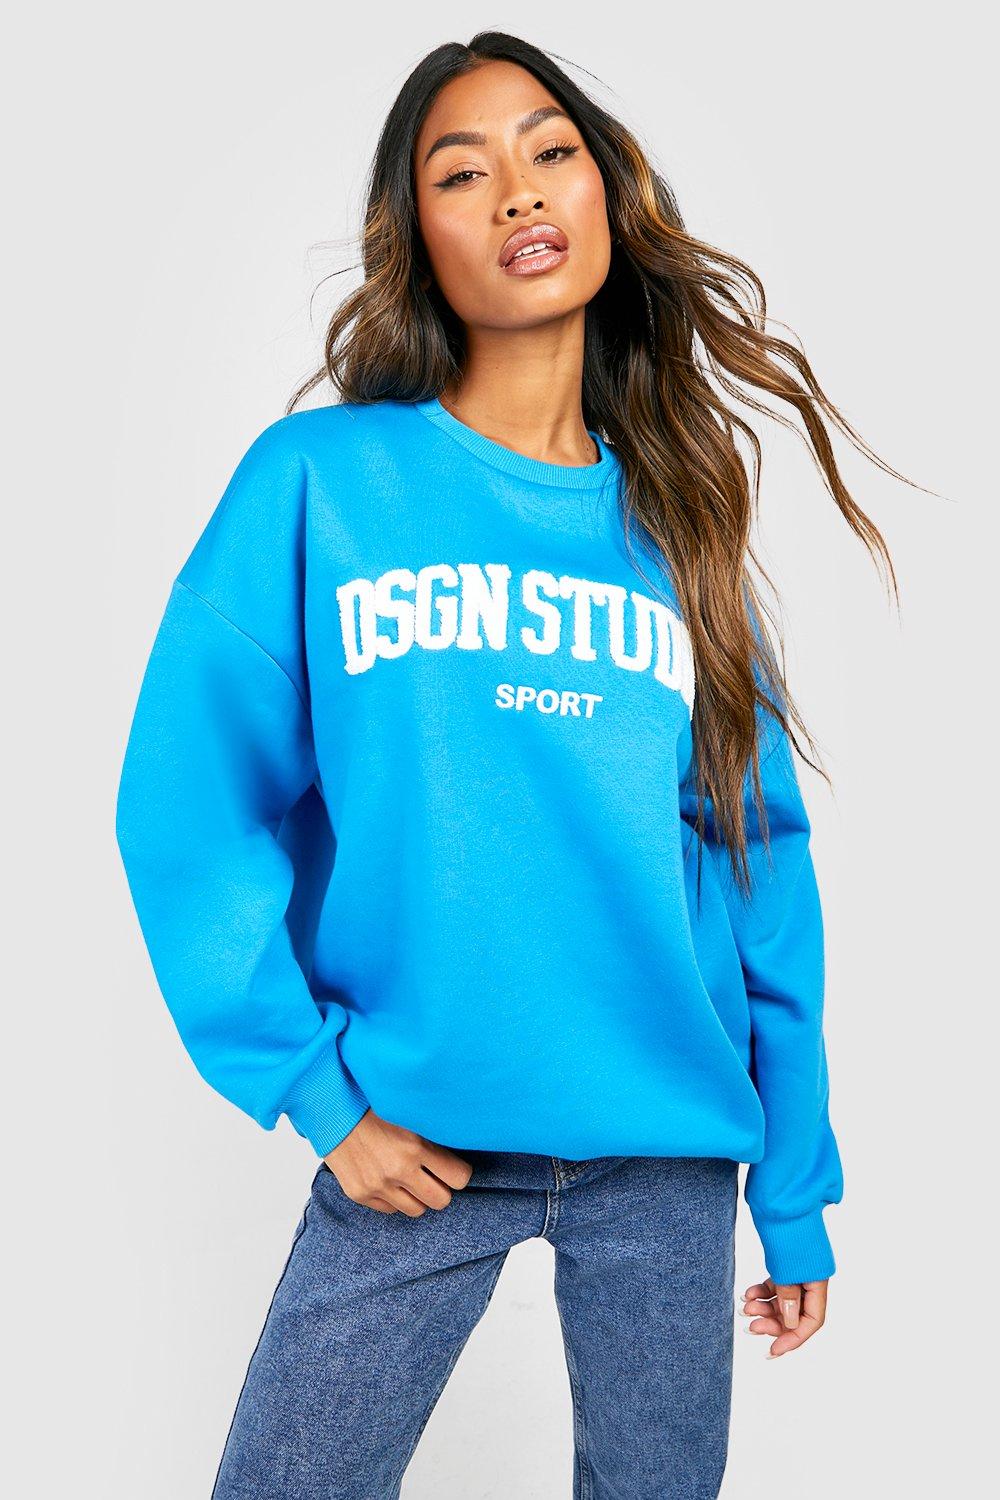 Dsgn Studio Sport Applique Sweatshirt | boohoo